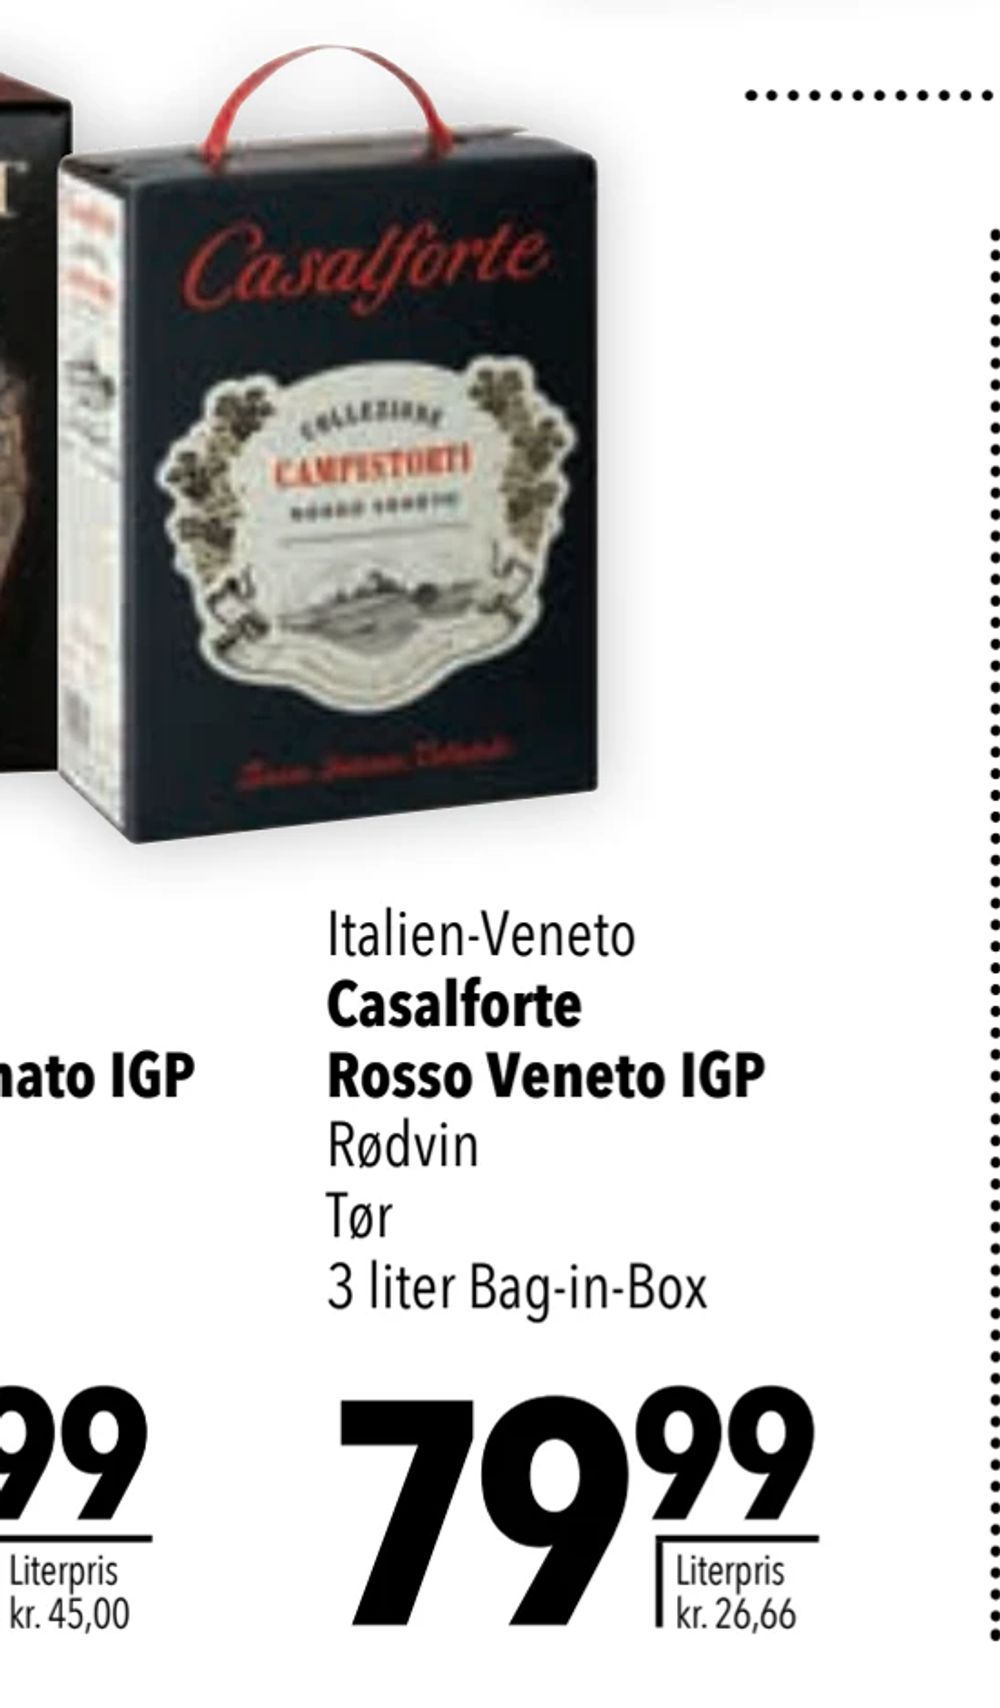 Tilbud på Casalforte Rosso Veneto IGP fra CITTI til 79,99 kr.